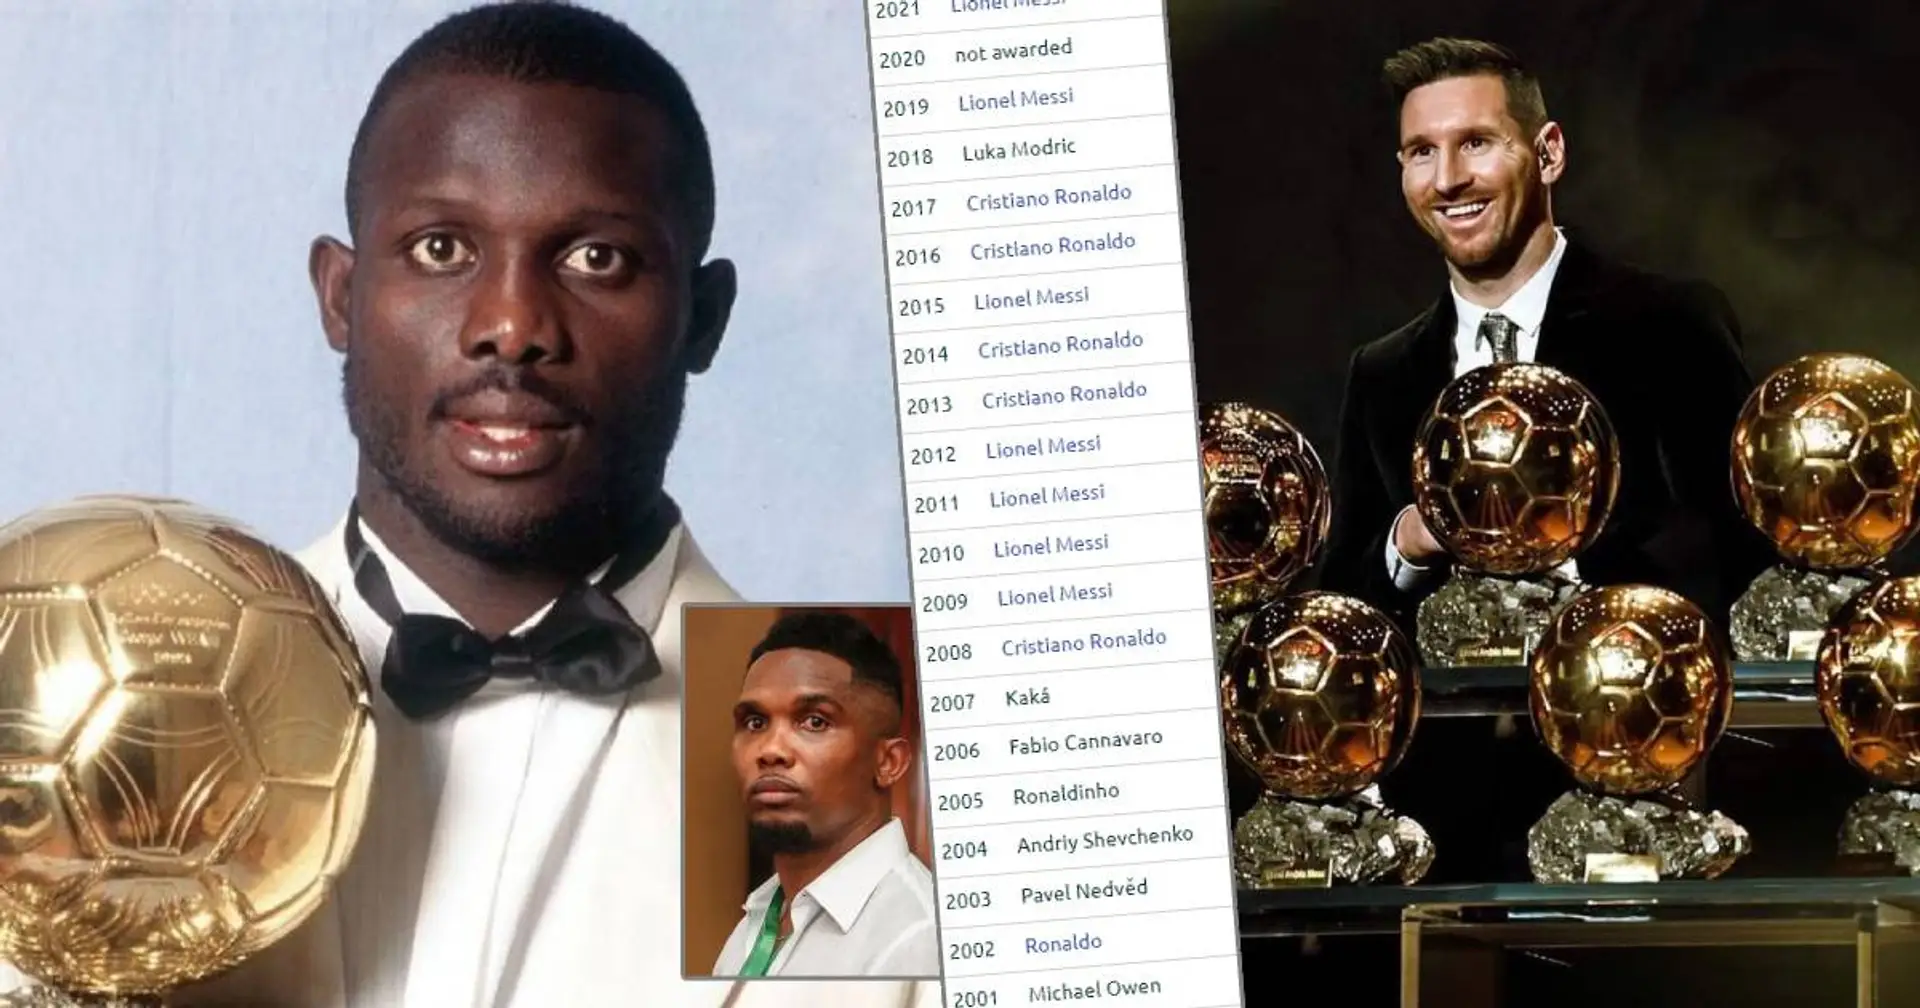 Eto'o über Ballon d'Or: "Wenn du ein afrikanischer Spieler bist, ist es für dich schwieriger zu gewinnen"